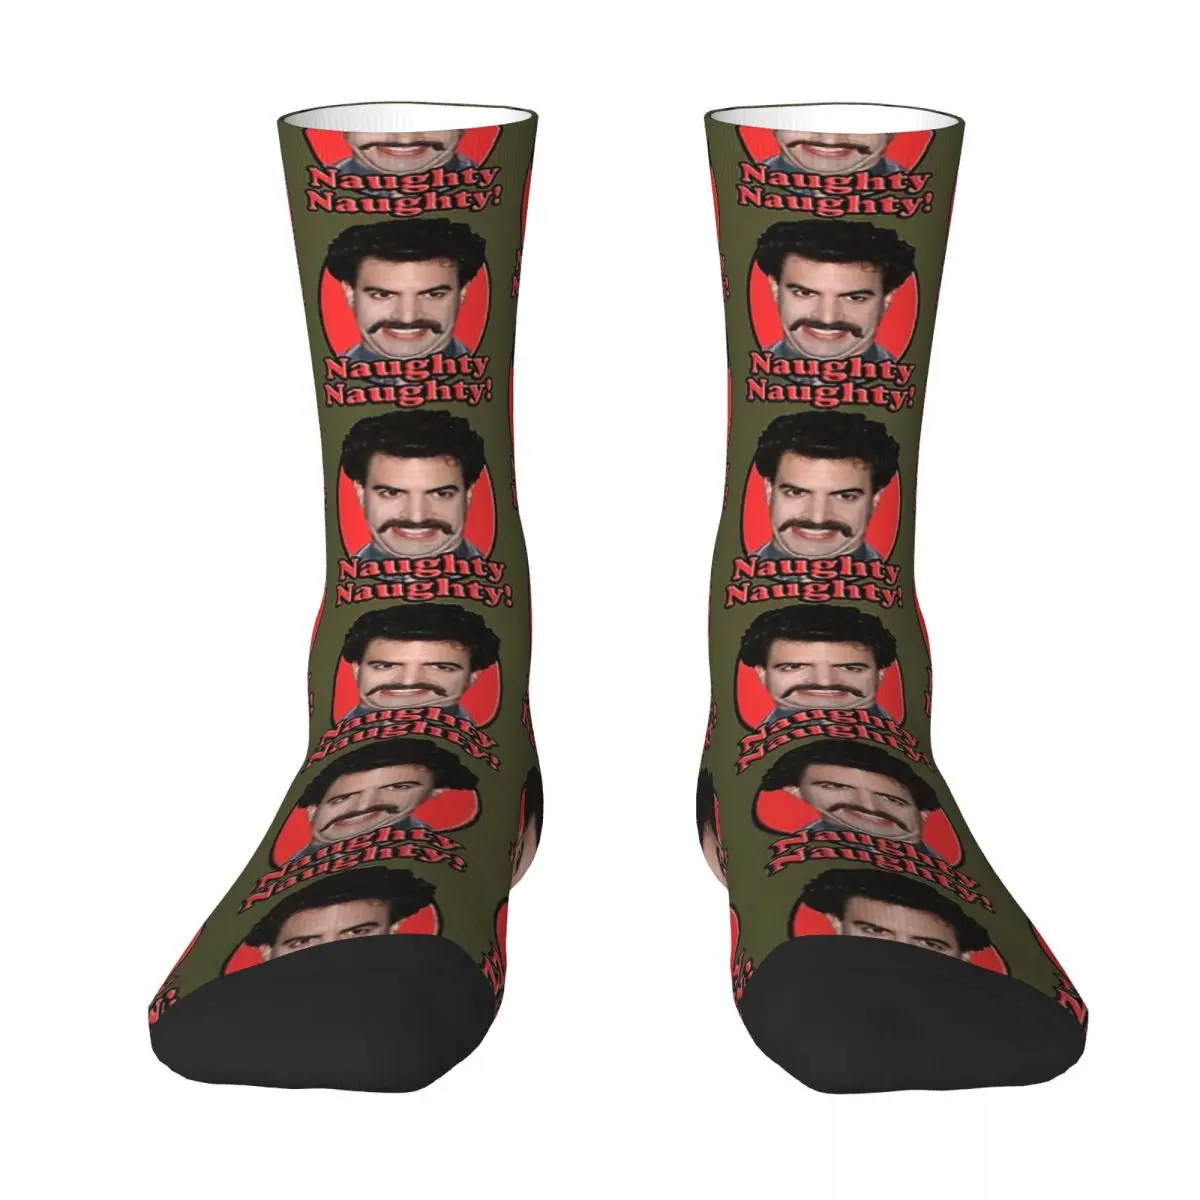 Borat, Naughty Naughty Adult Socks,Unisex socks,men Socks women Socks